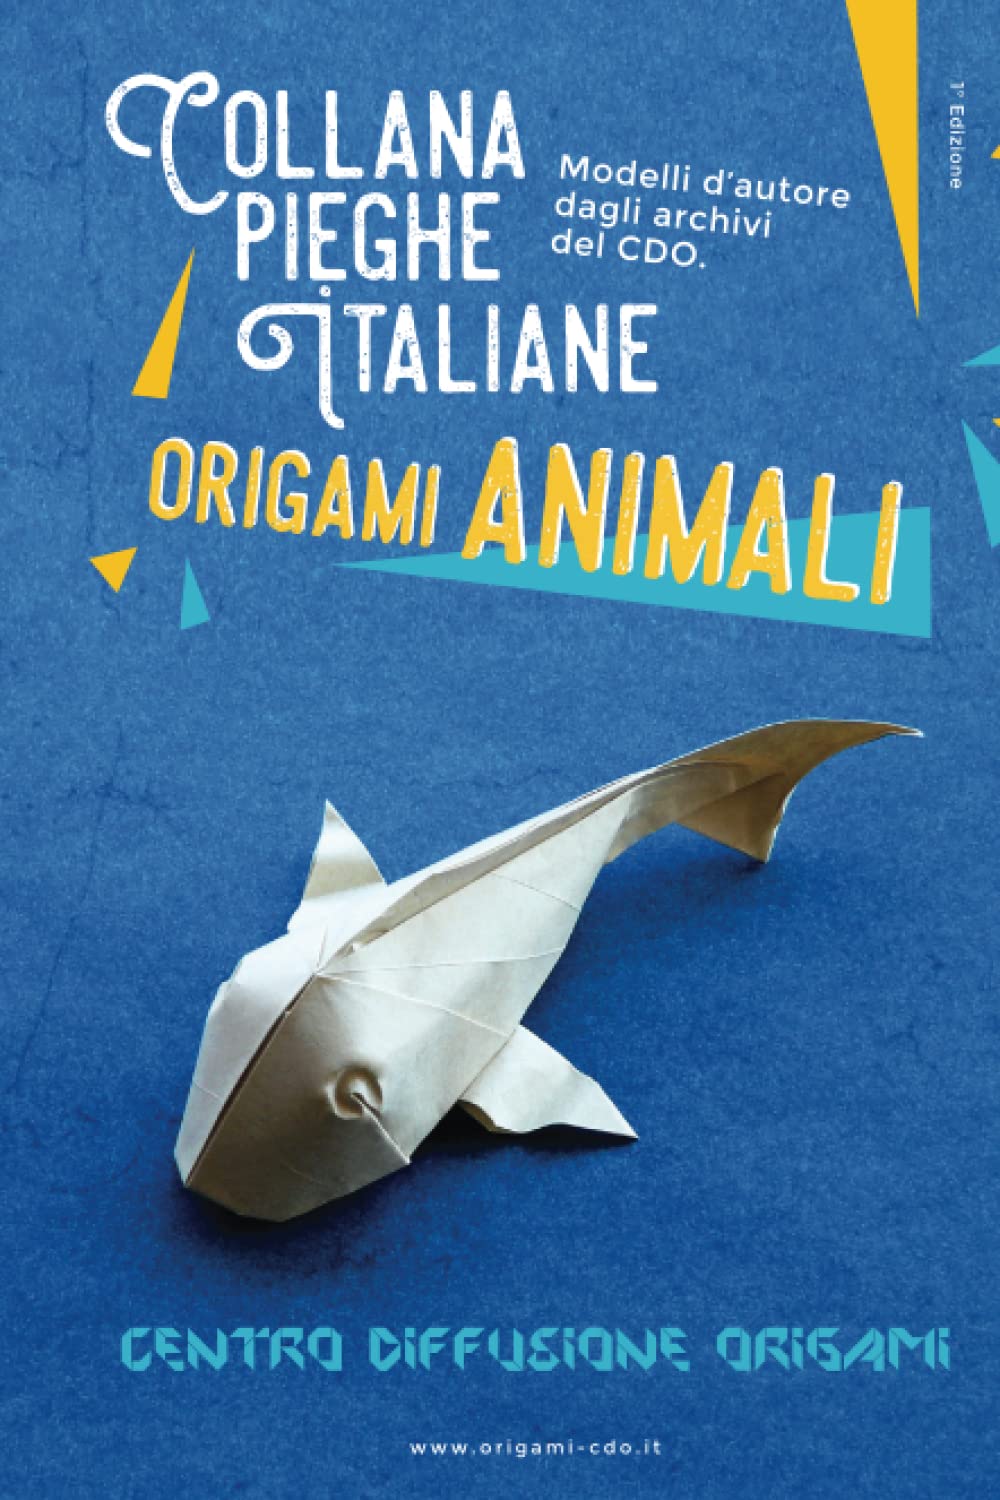 Collana pieghe Italiane - origami ANIMALI : page 44.